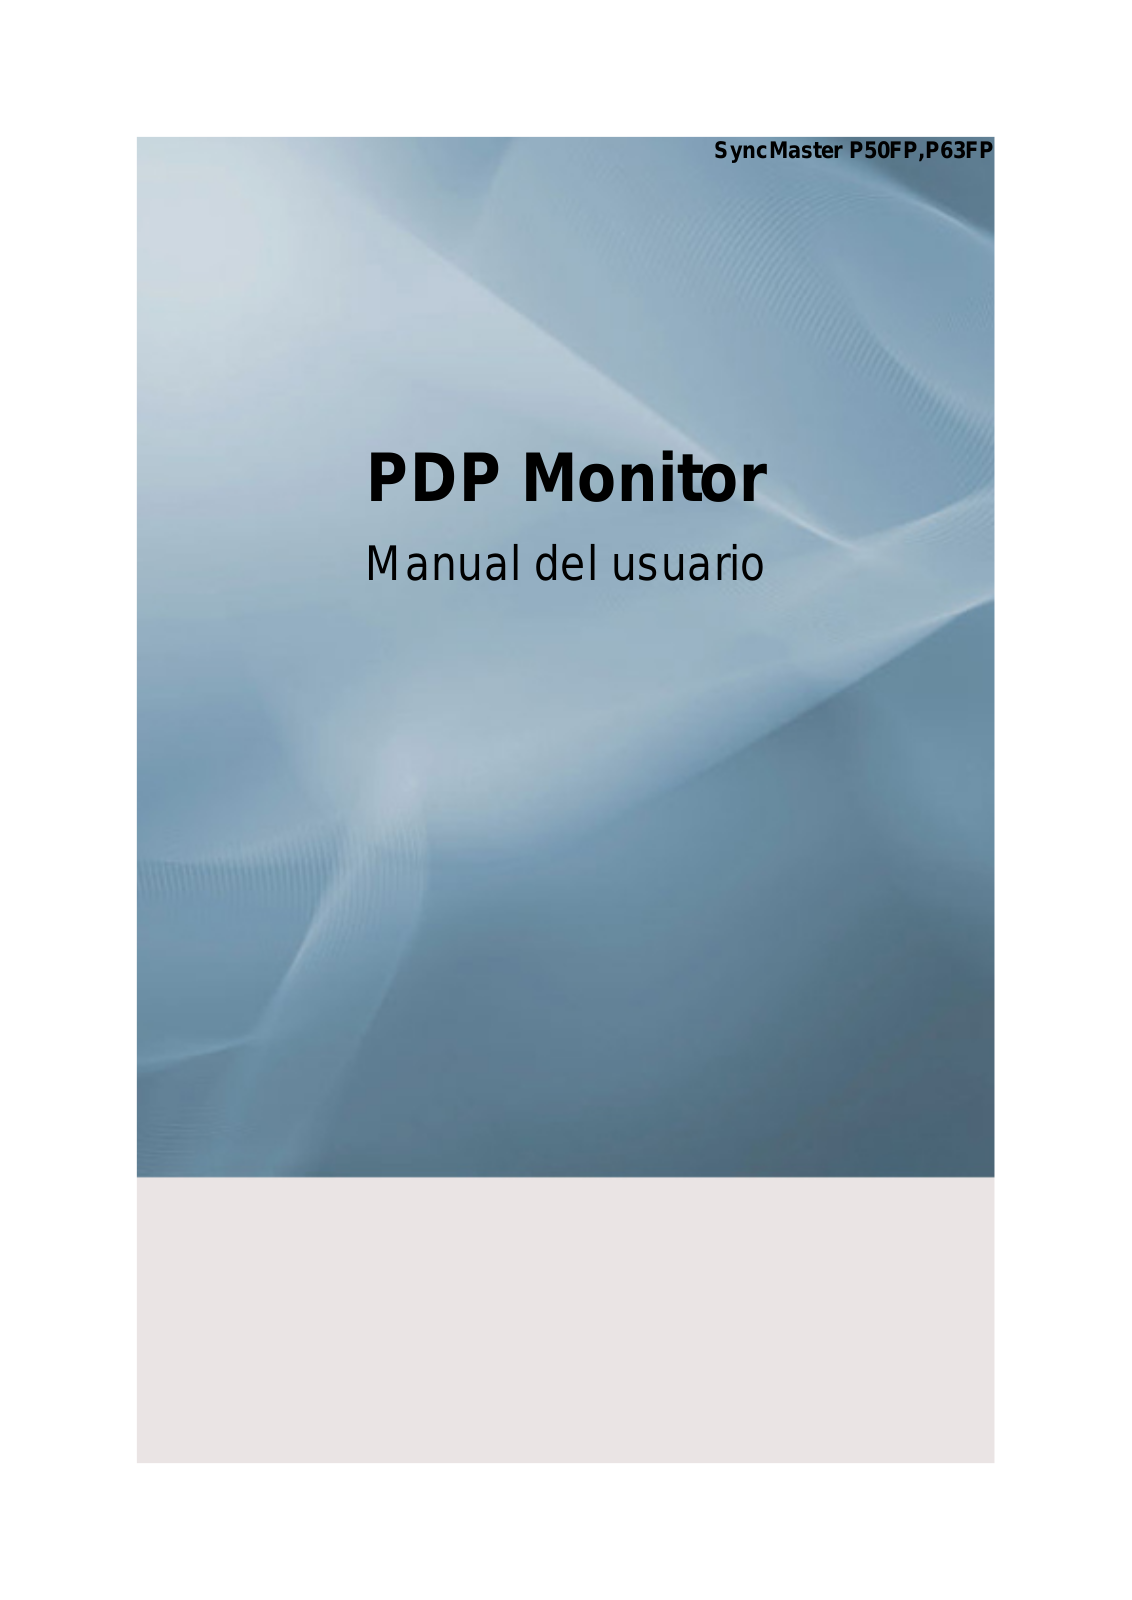 Samsung PPM63FP, PPM50FP User Manual